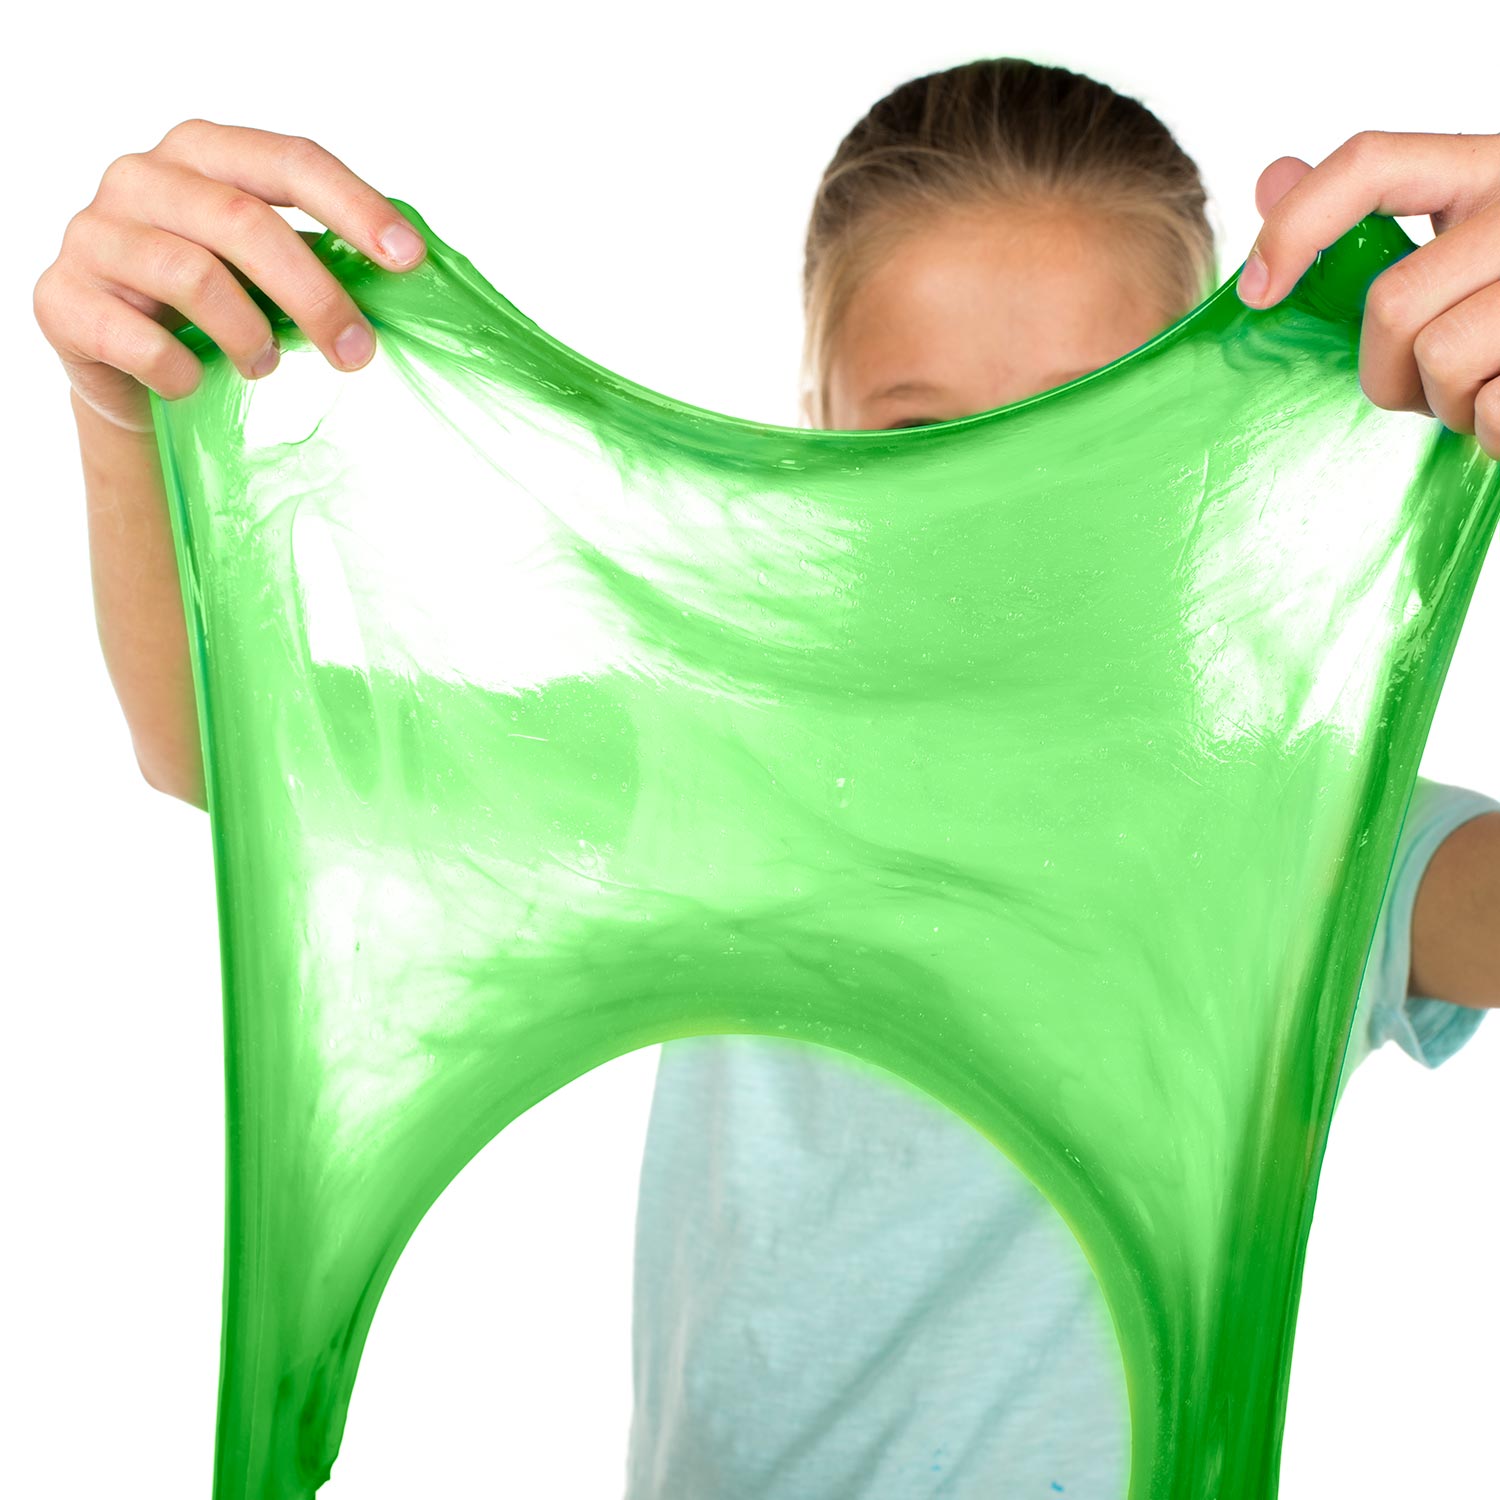 Slime Art - Green Slime